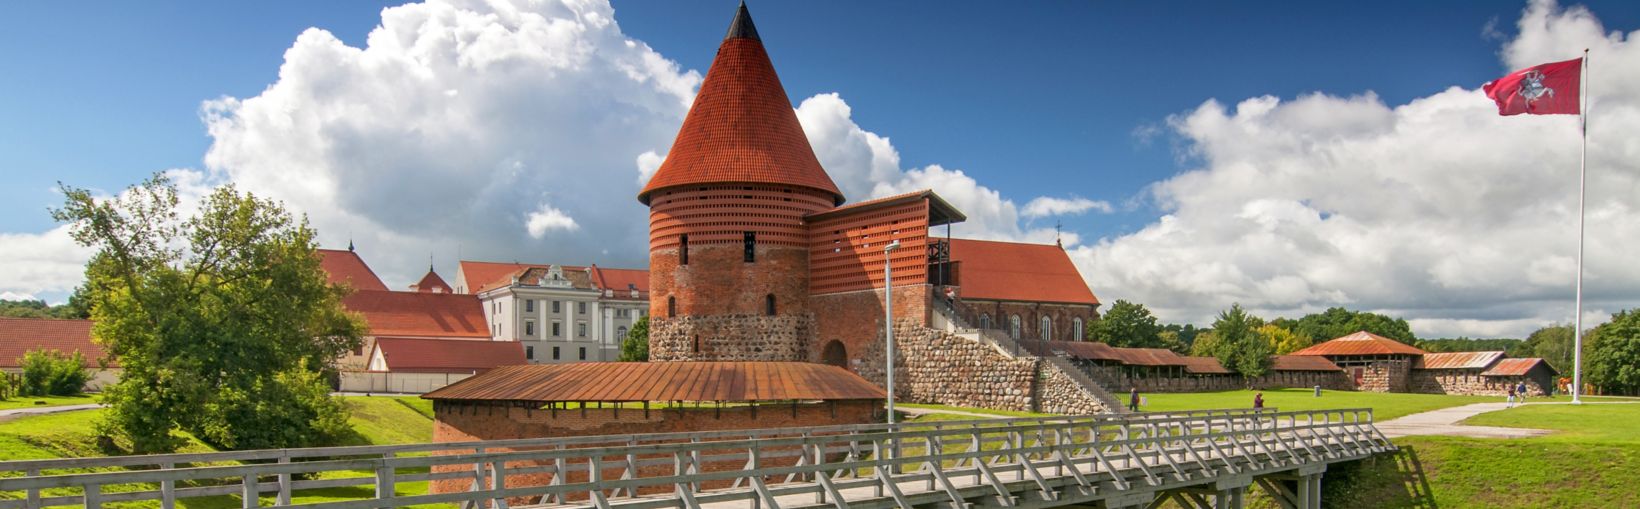 Château de Kaunas, édifié au milieu du XIVe siècle, dans le style gothique, à Kaunas, en Lituanie.